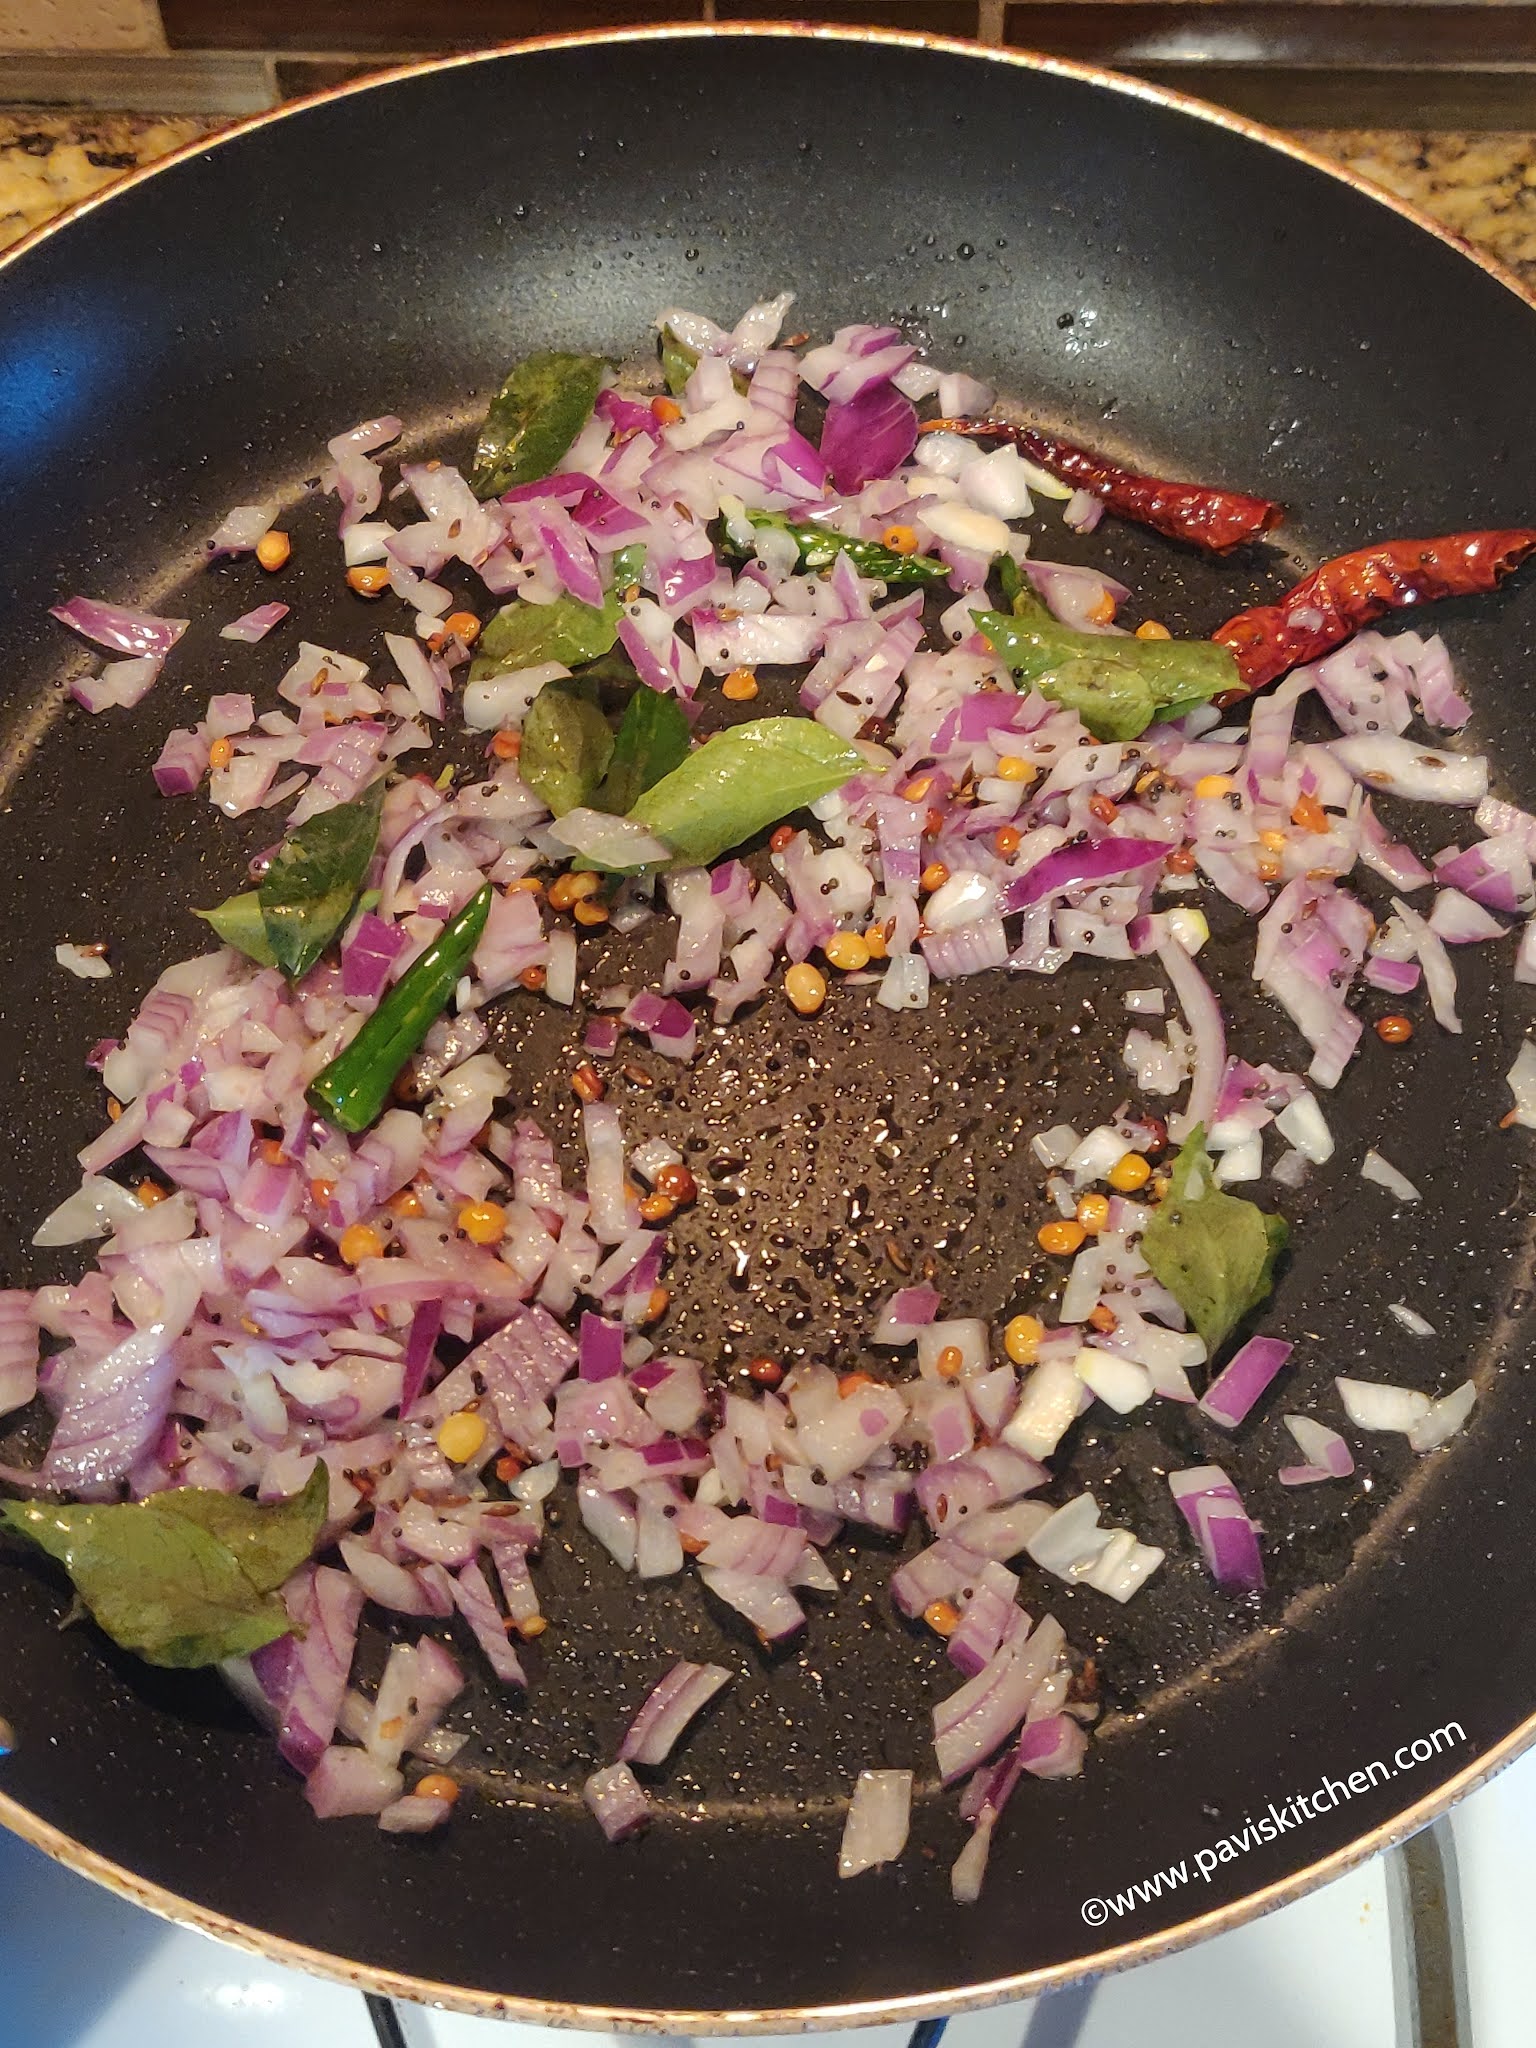 Cabbage kootu recipe | South Indian cabbage dal curry | Muttaikose kootu recipe